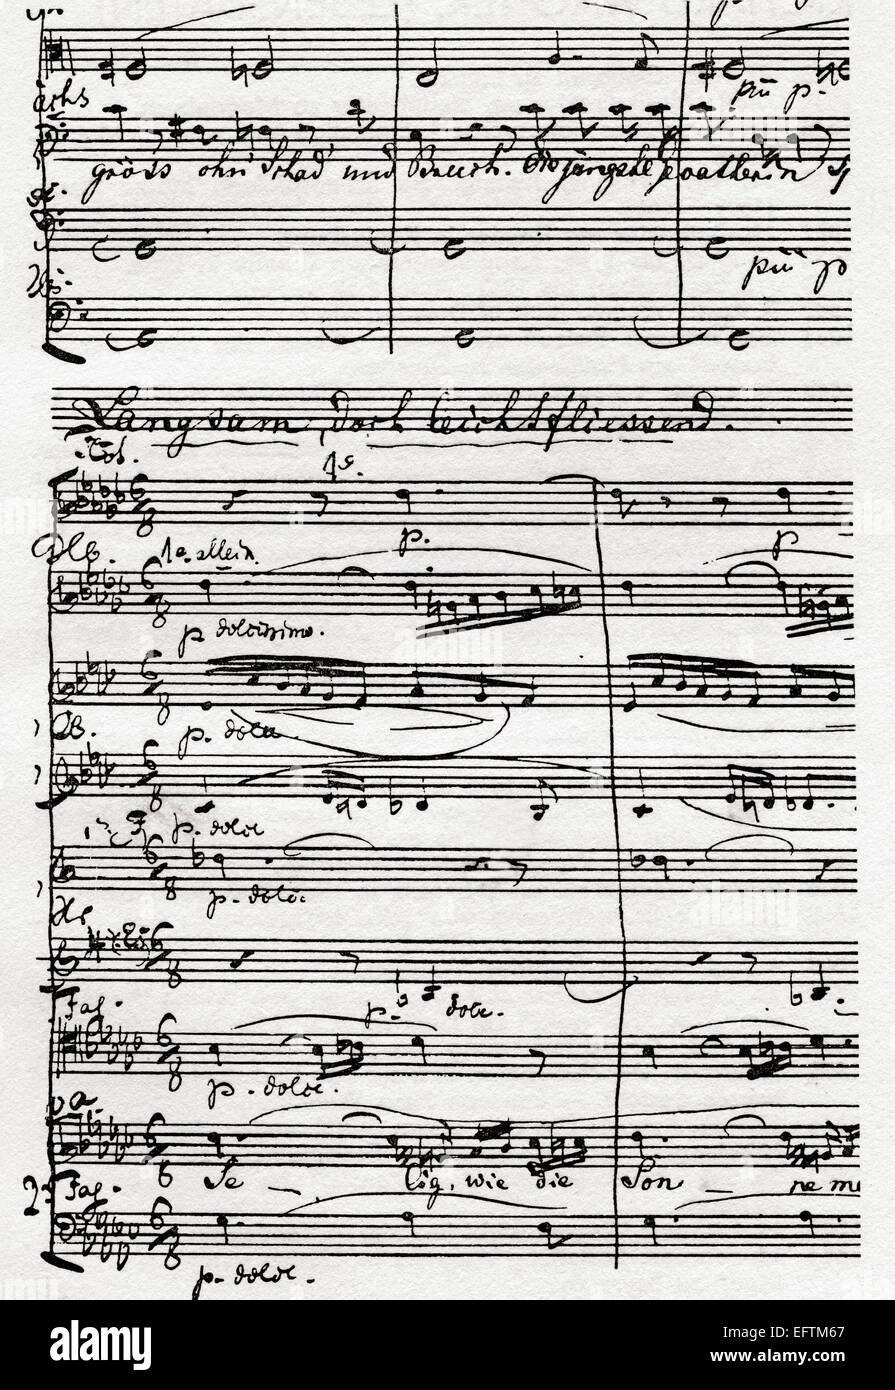 Bestandteil der Partitur von Die Meistersinger von Nürnberg, "The Master-Singers von Nürnberg". Musik Theater oder Oper in drei Akten, geschrieben und komponiert von Richard Wagner. Stockfoto